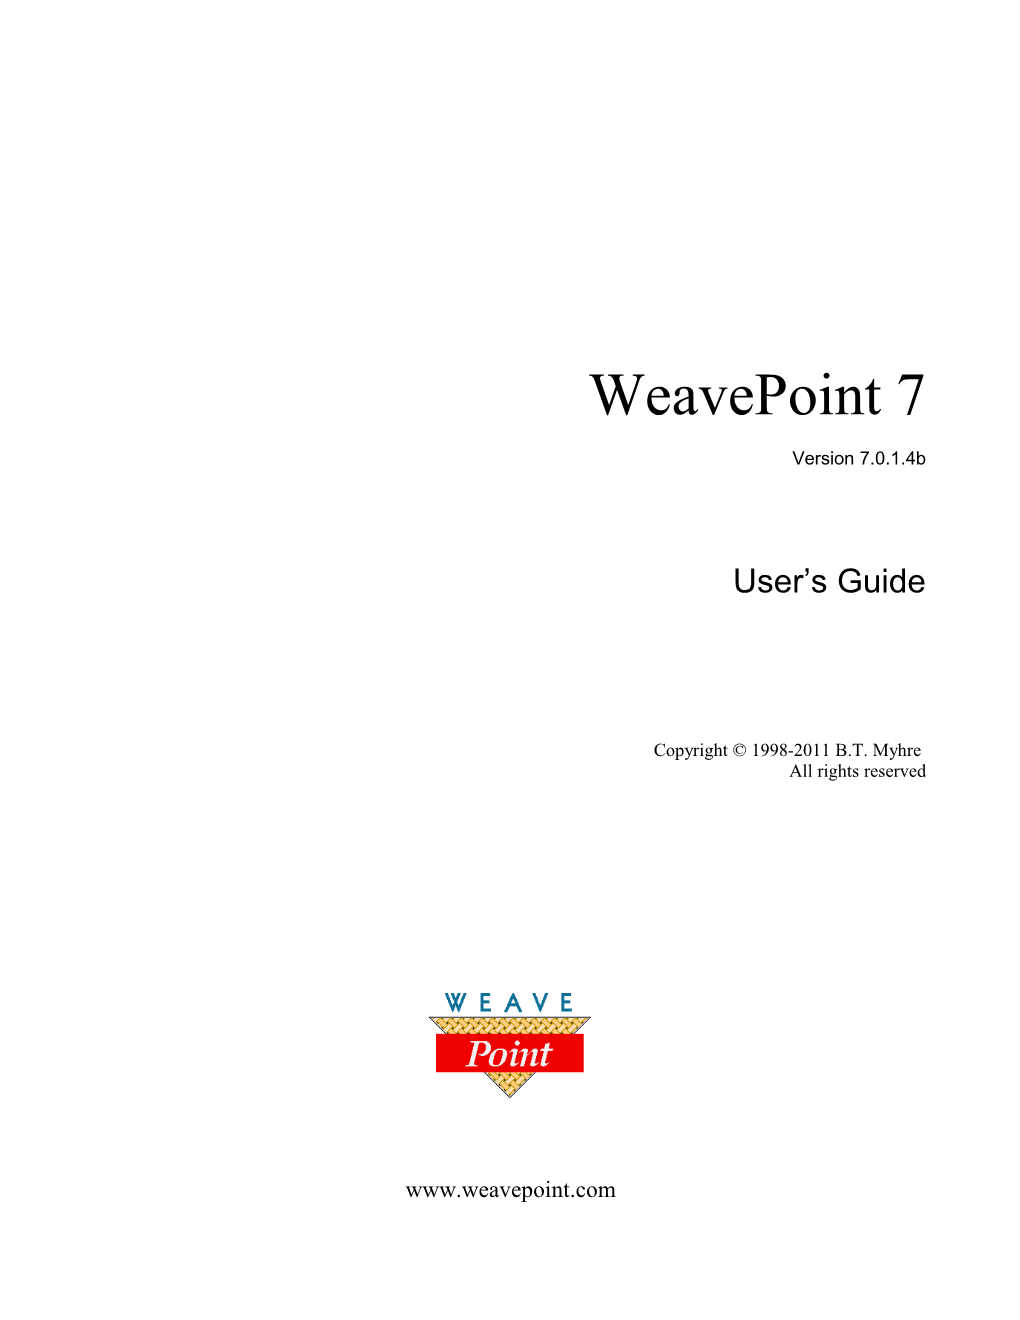 Weavepoint Help Contents